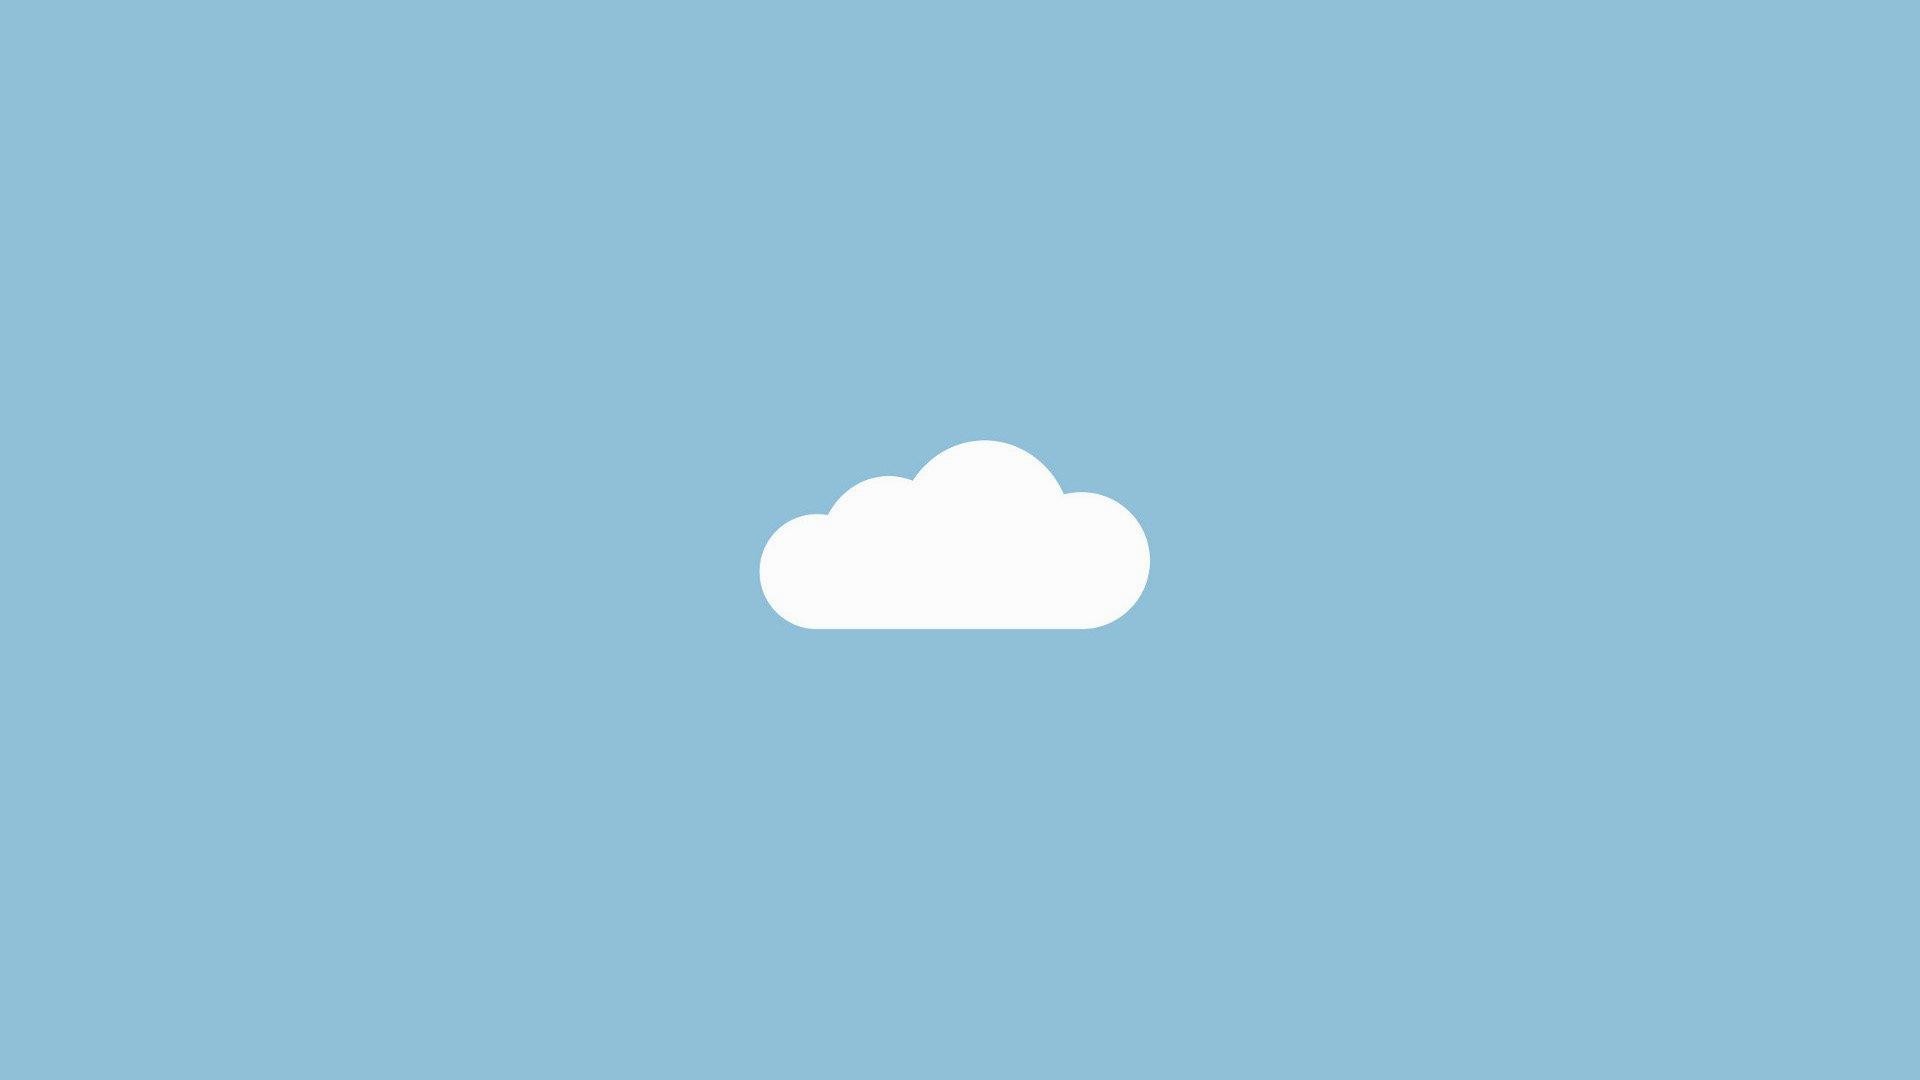 descarga de fondo de pantalla simple,nube,tiempo de día,cielo,azul,fuente